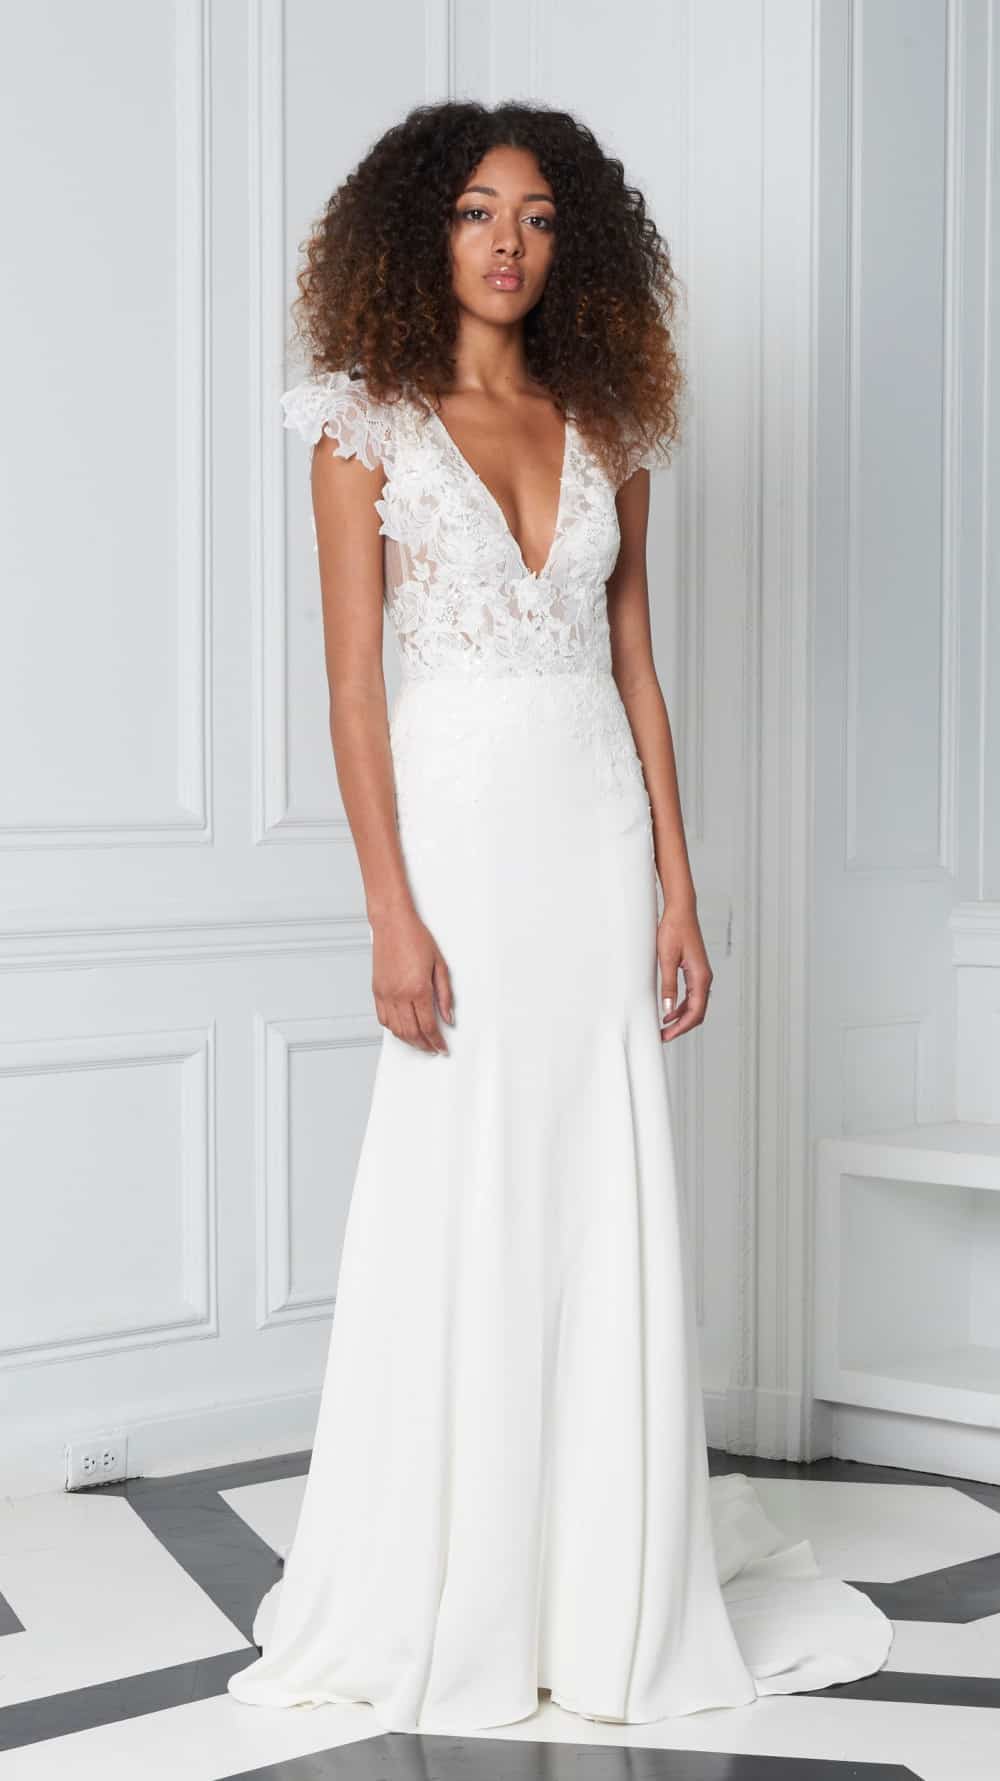 Plunge neckline sleek wedding gown Bliss 2018 Collection